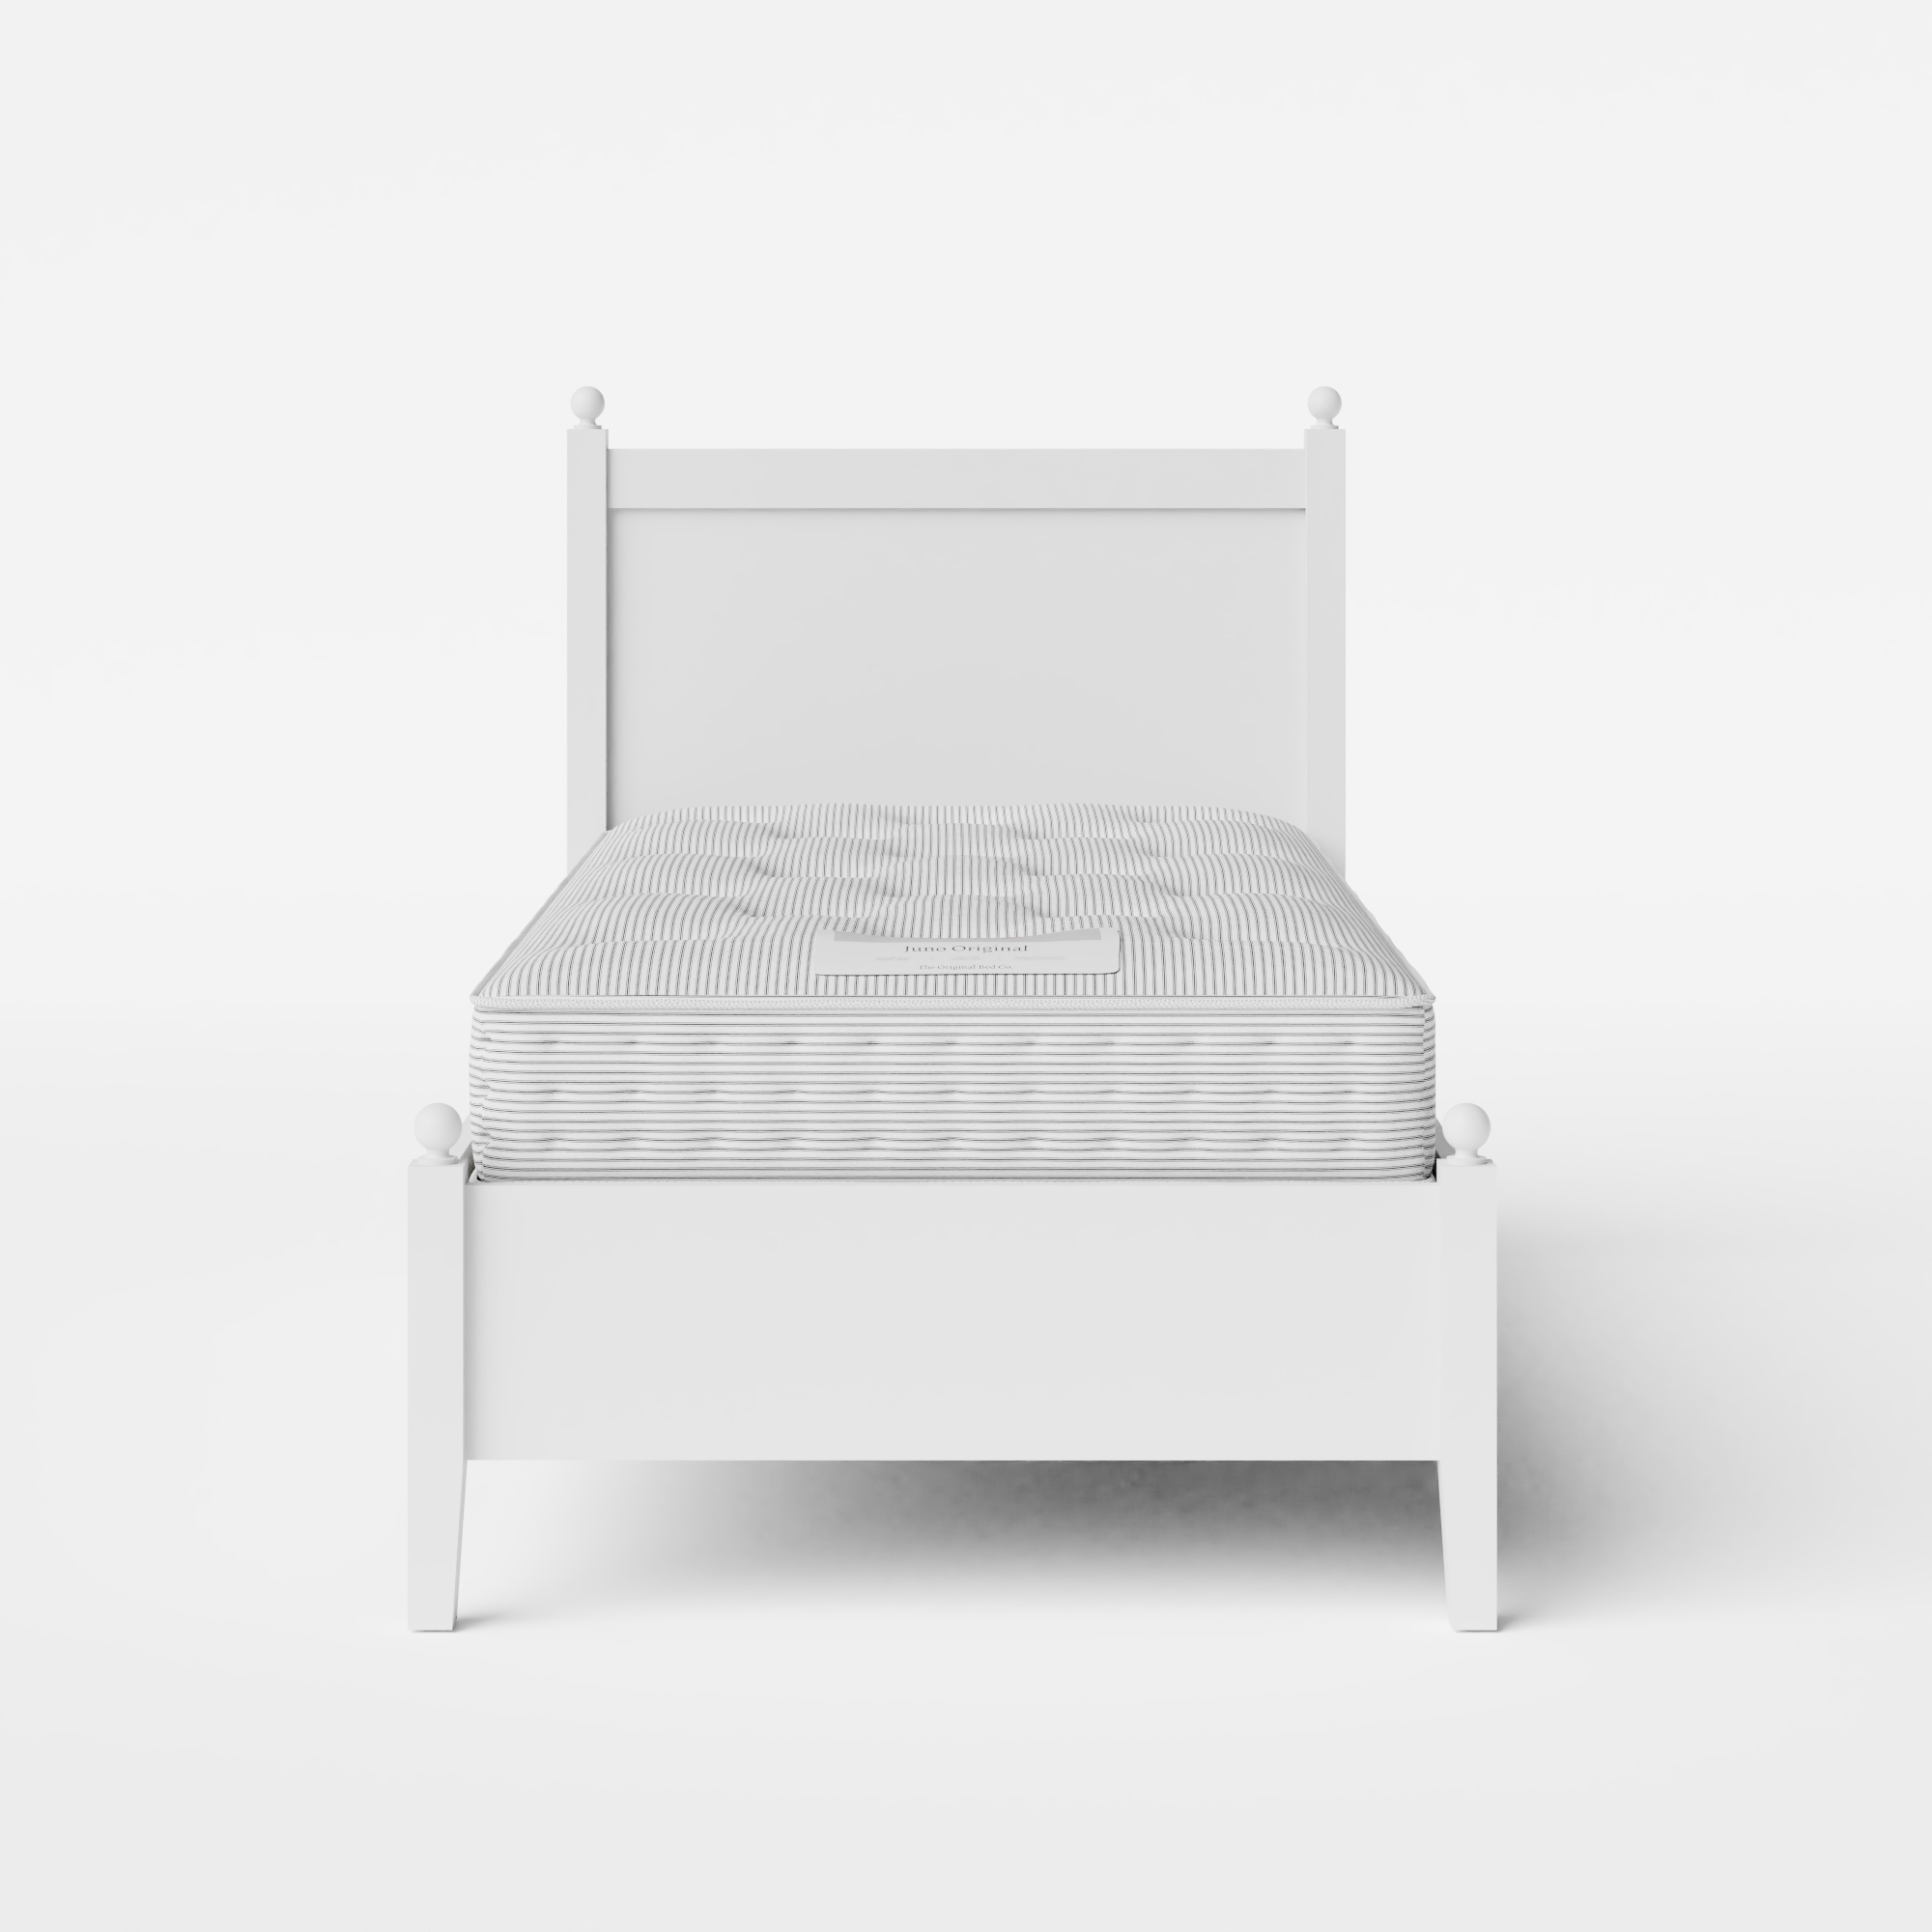 Marbella Low Footend Painted cama individual de madera pintada en blanco con colchón